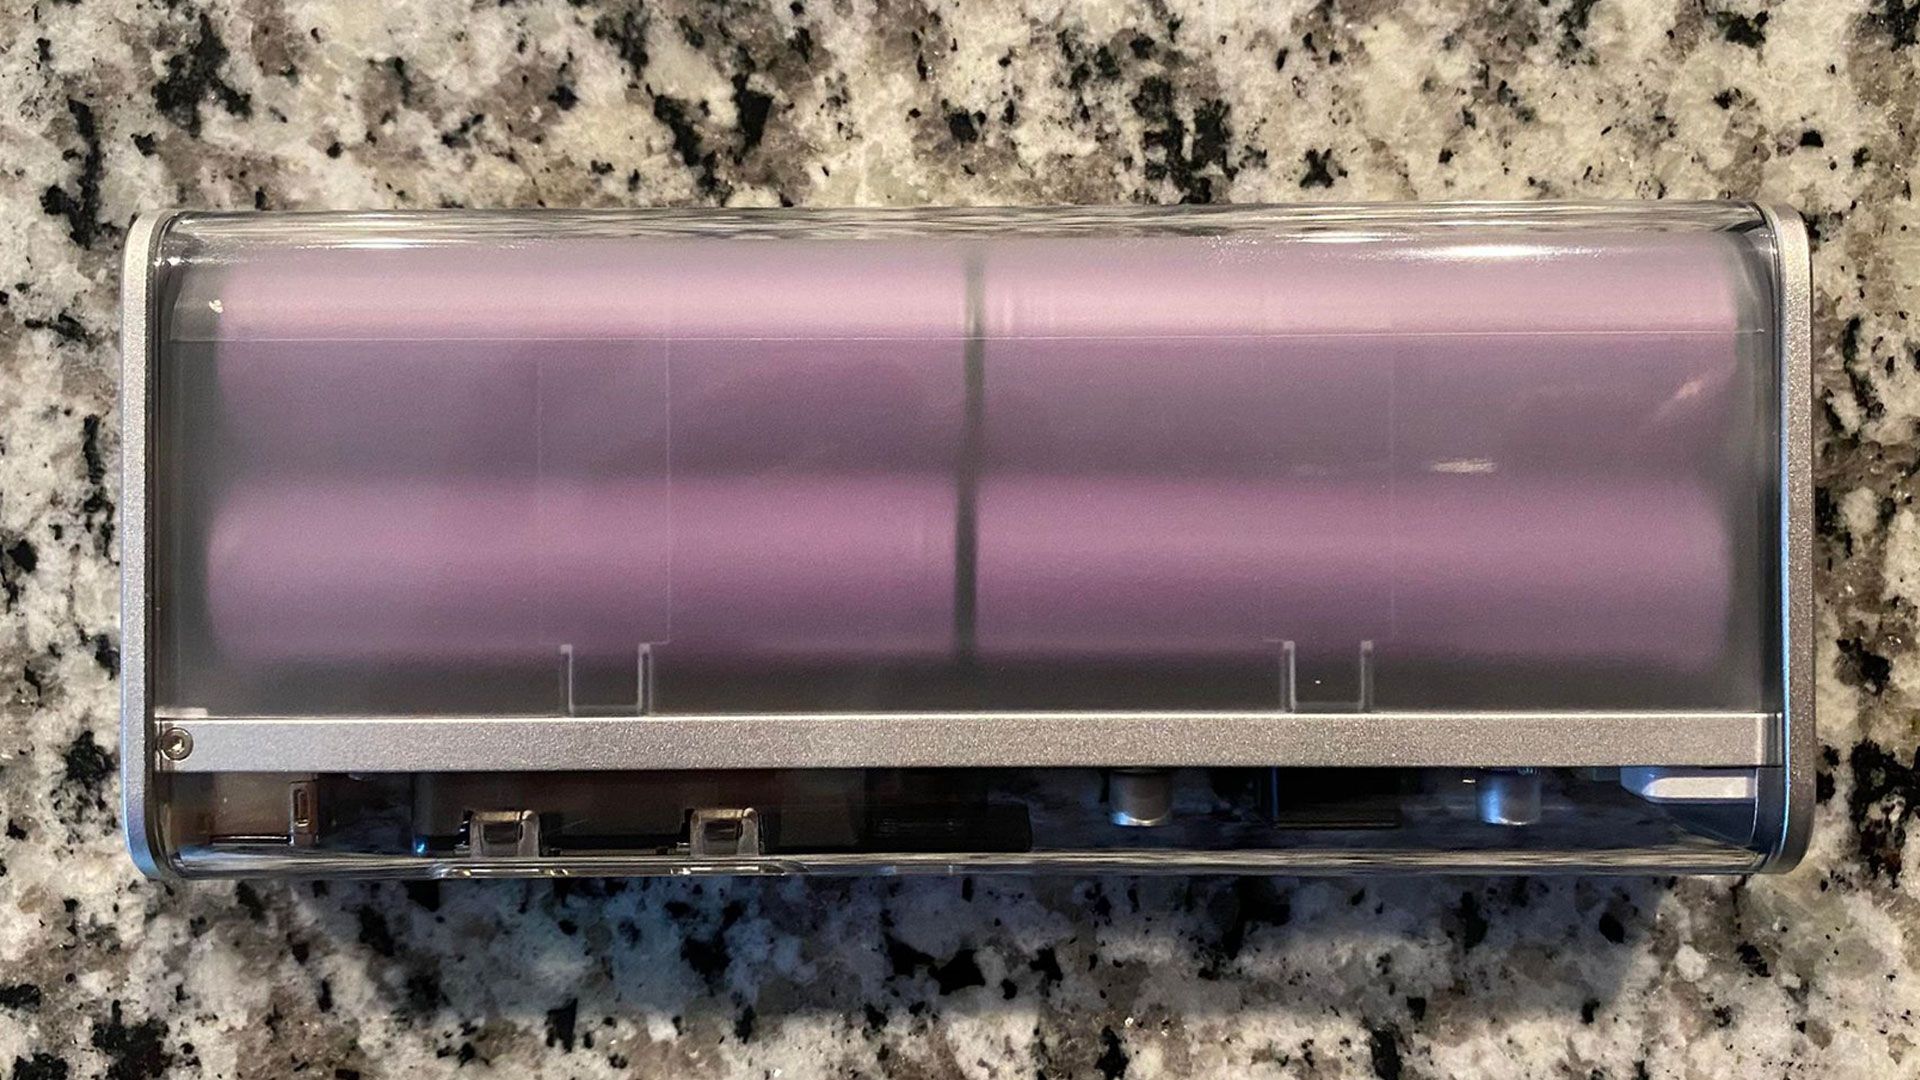 Shargeek Storm 2 Slim clear case showing four purple batteries